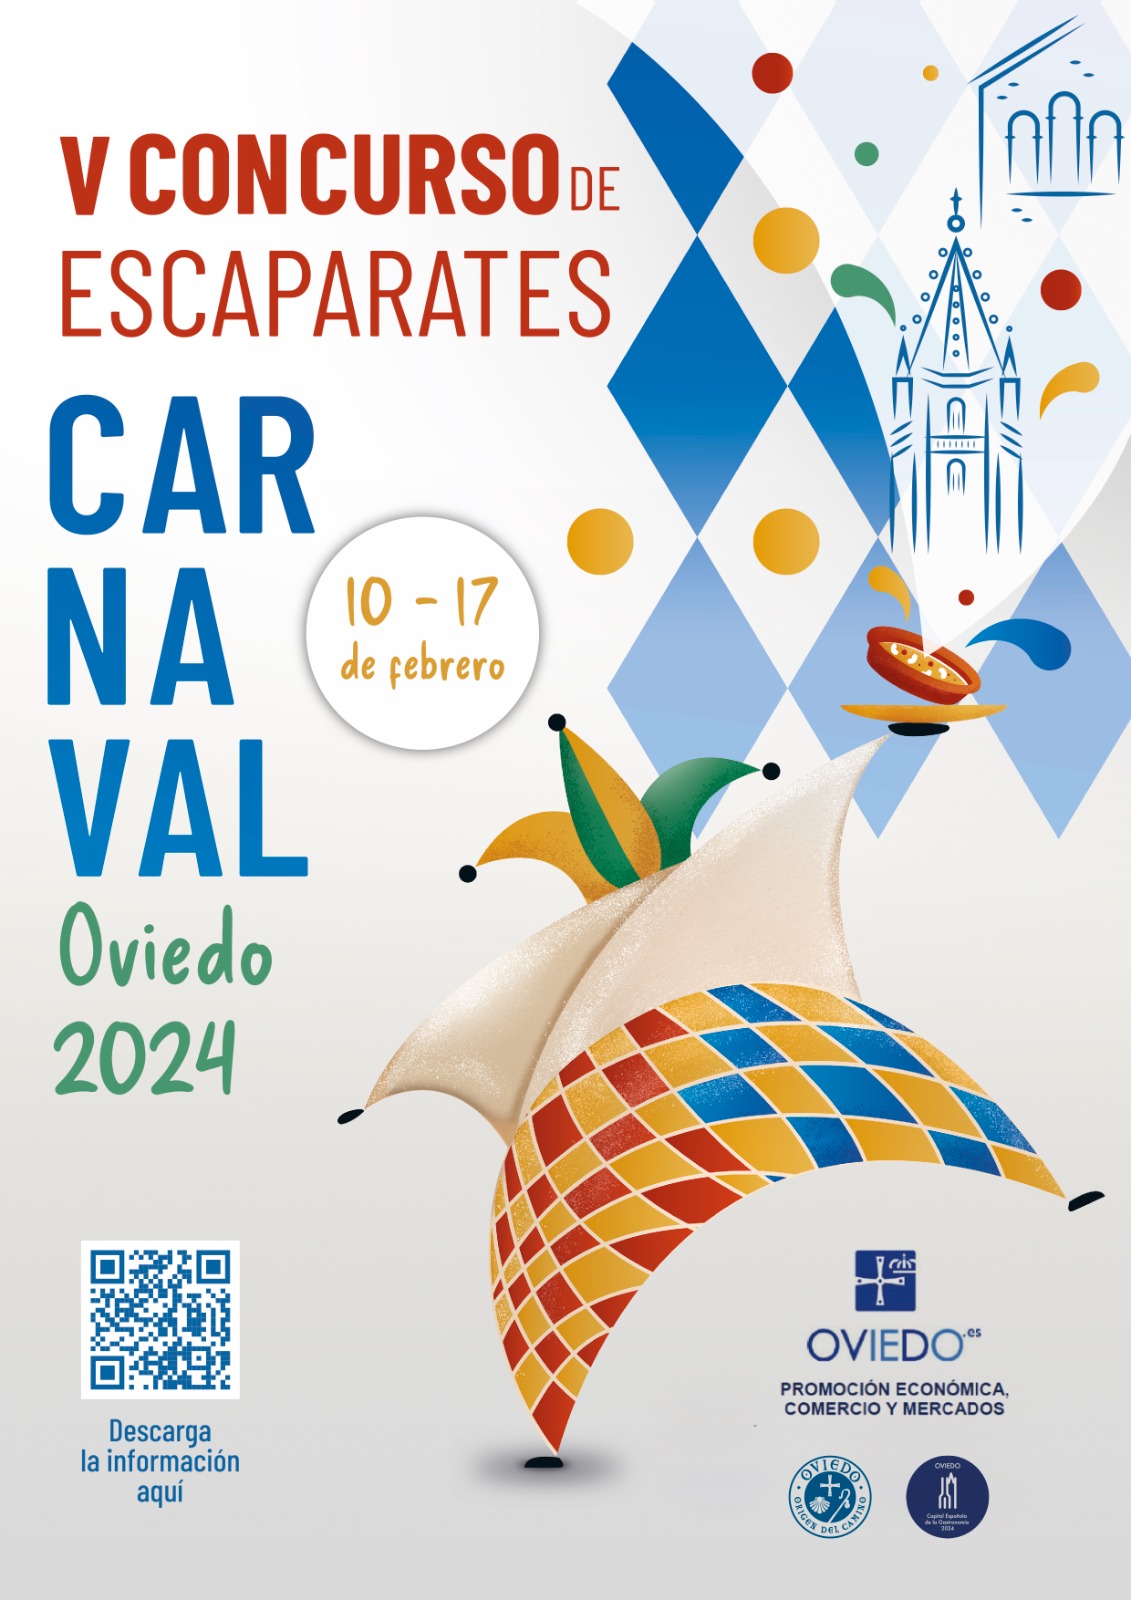 Concurso de escaparates en Carnaval 2024